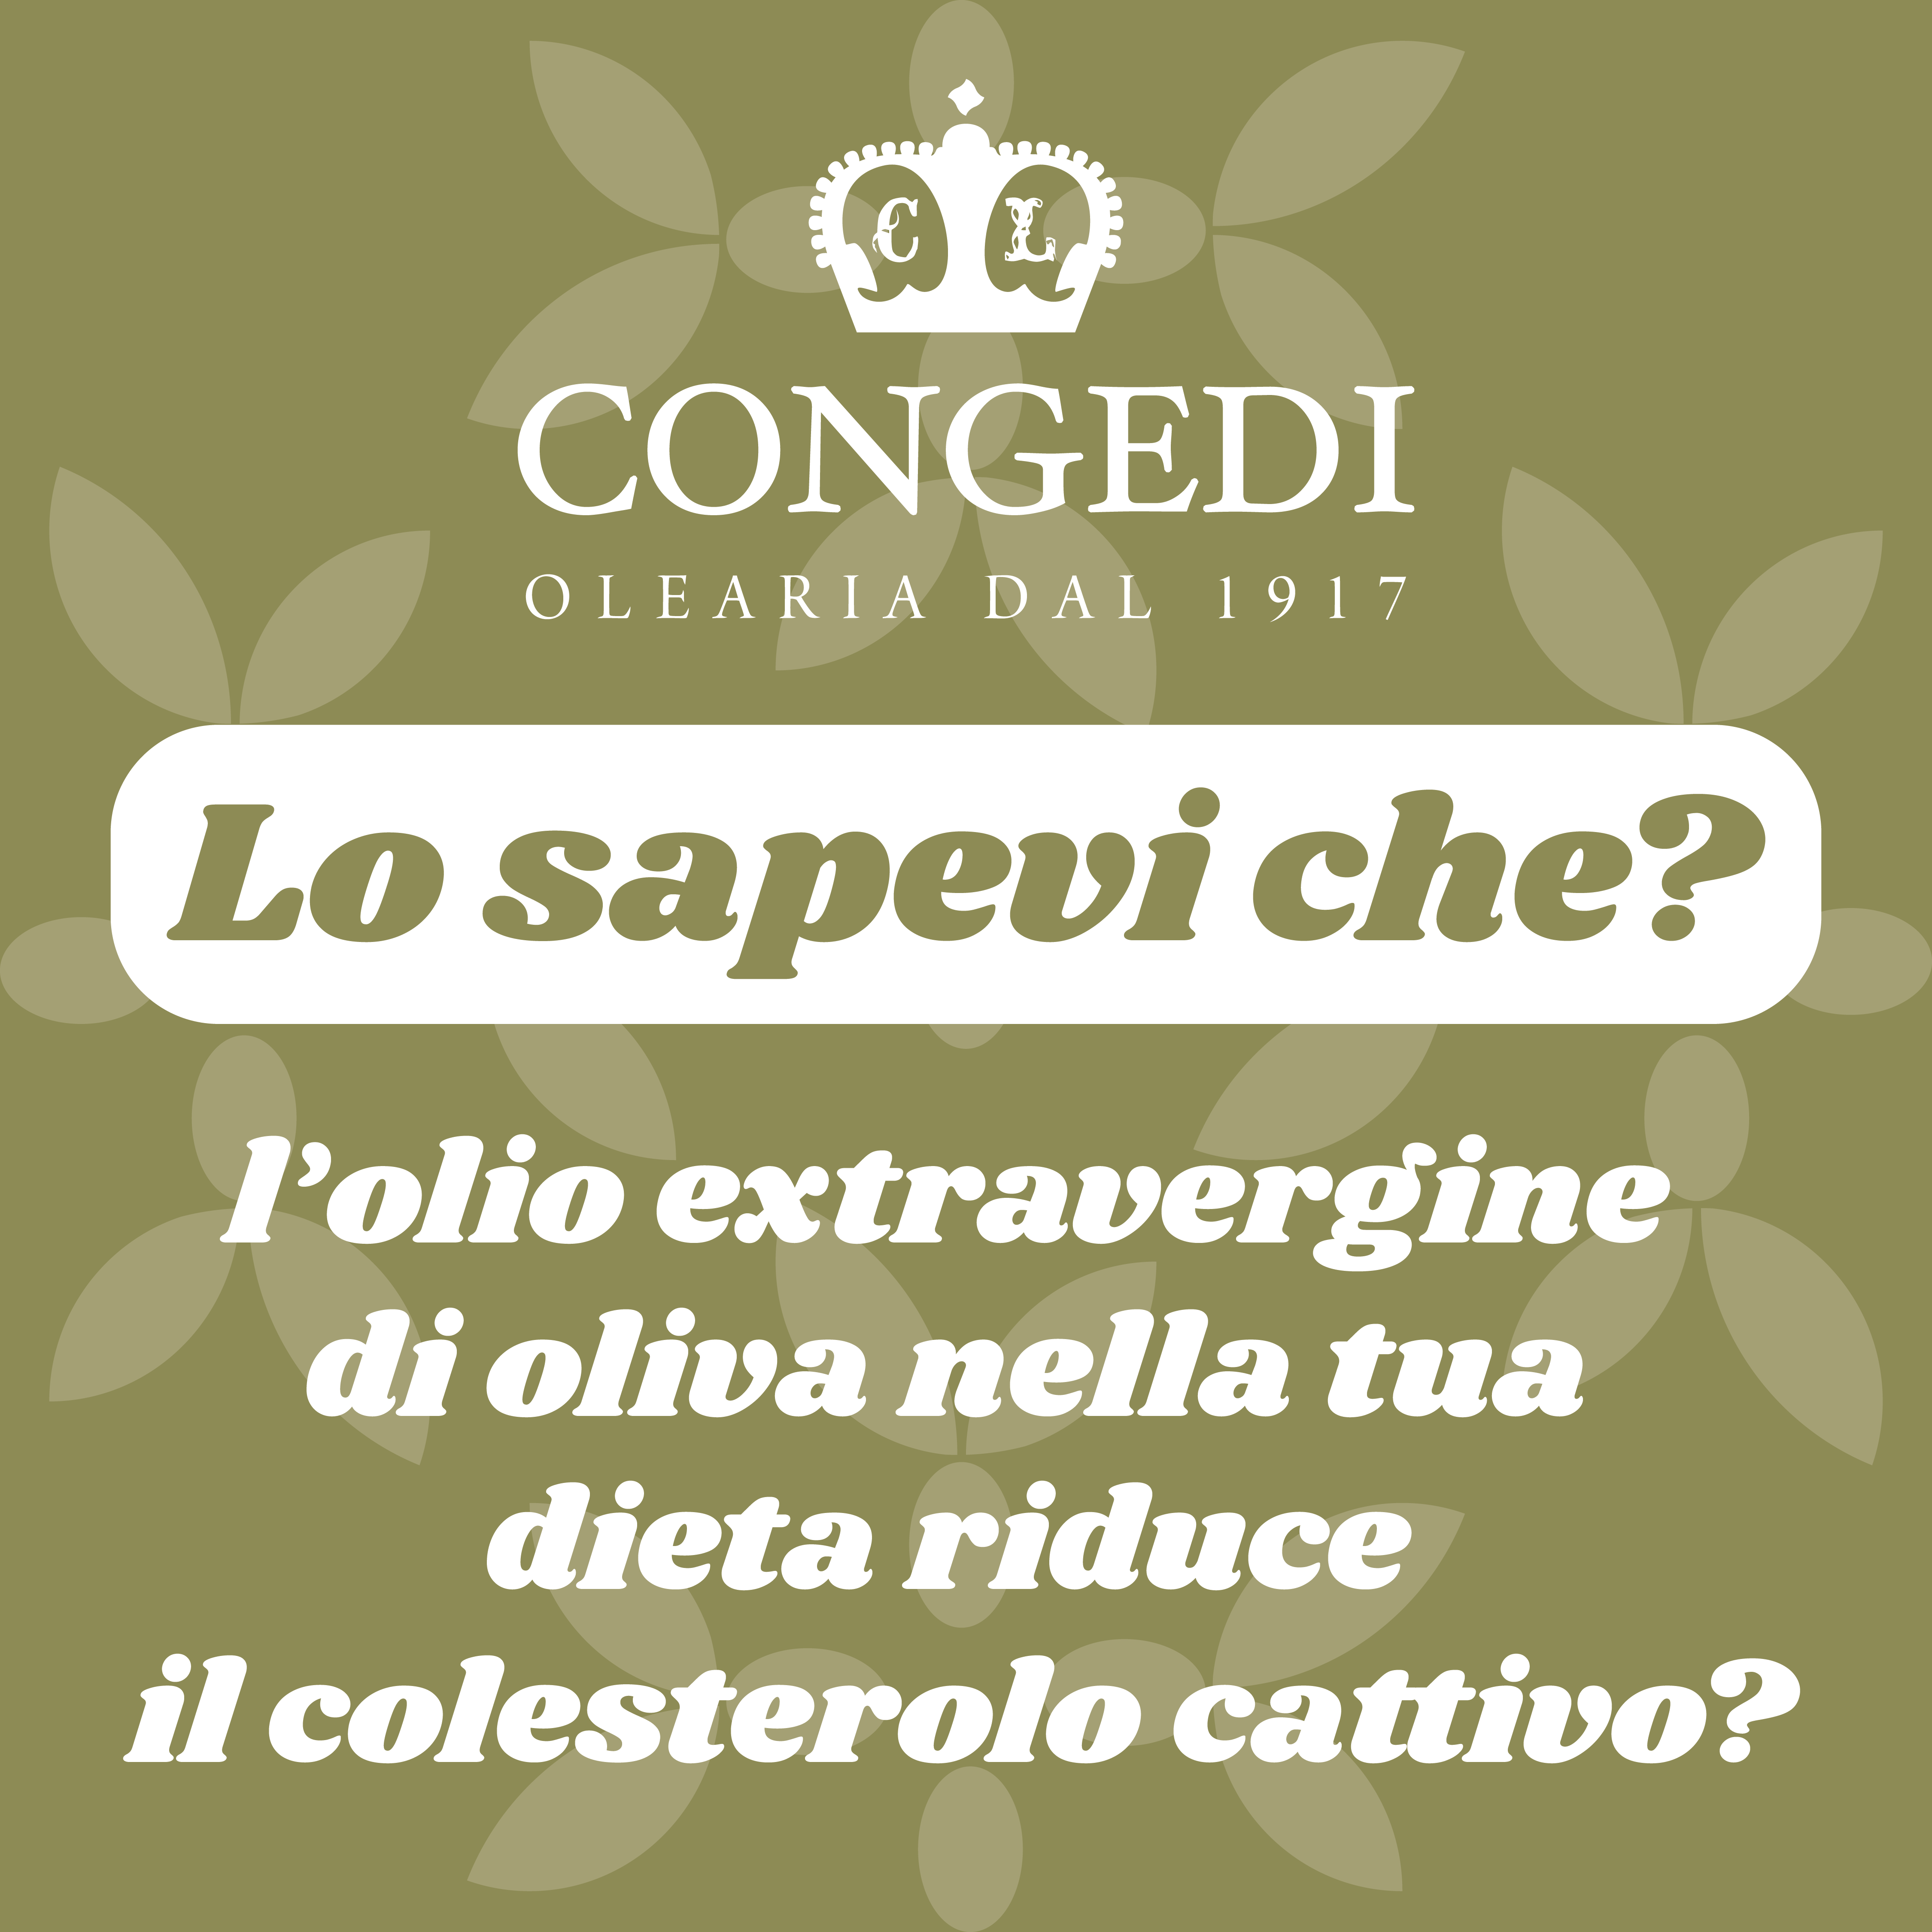 Lo sapevi che l’olio extravergine d’oliva nella tua dieta riduce il colesterolo “cattivo”?